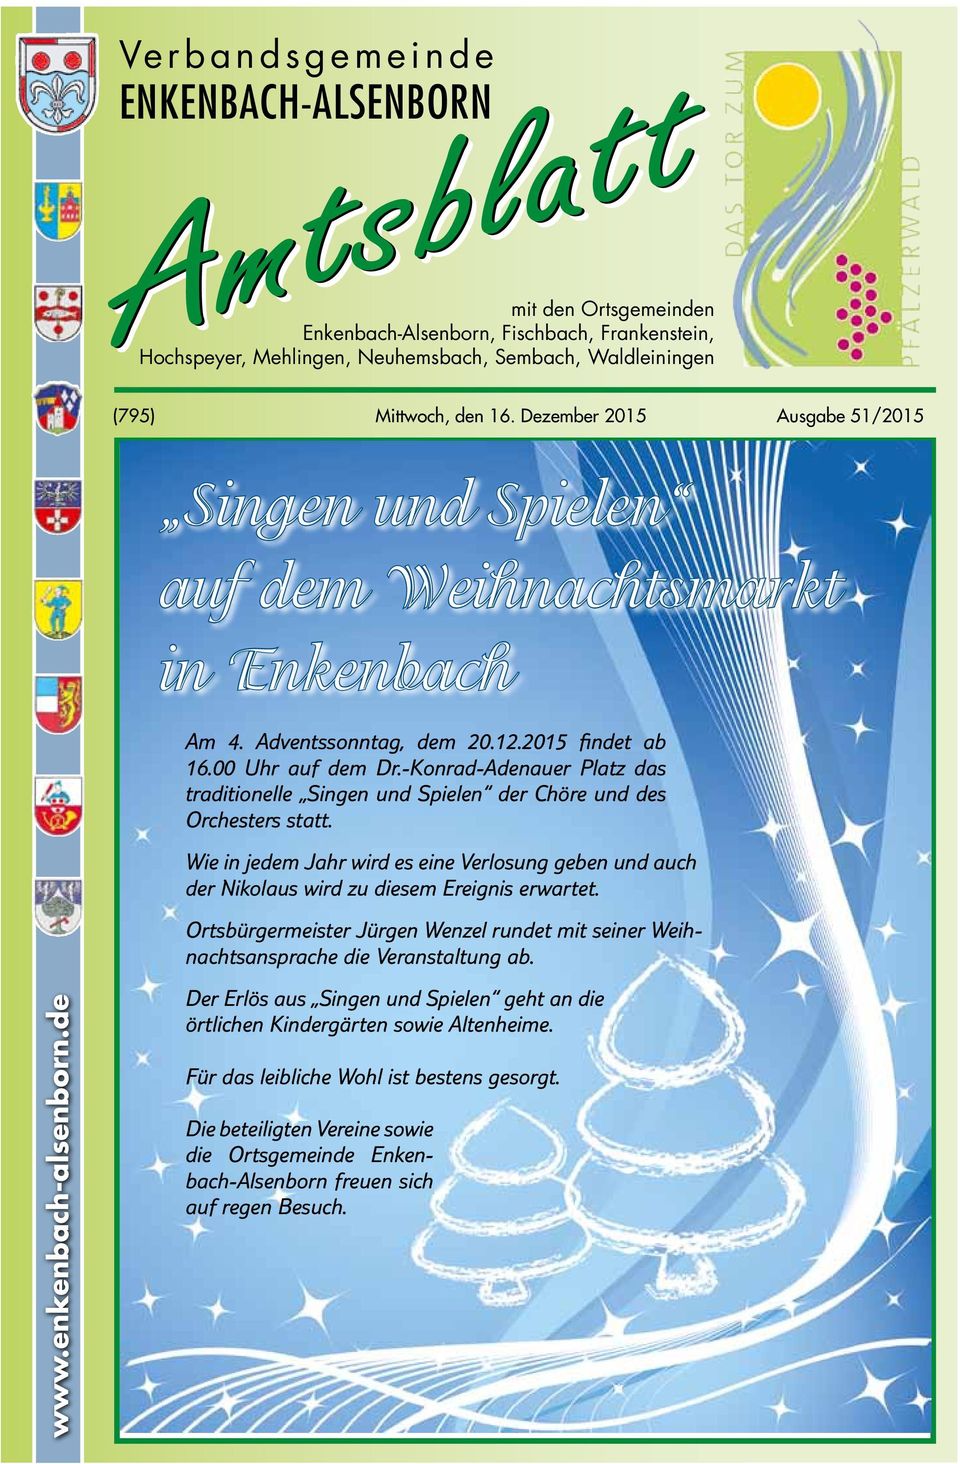 -Konrad-Adenauer Platz das traditionelle Singen und Spielen der Chöre und des Orchesters statt. Wie in jedem Jahr wird es eine Verlosung geben und auch der Nikolaus wird zu diesem Ereignis erwartet.